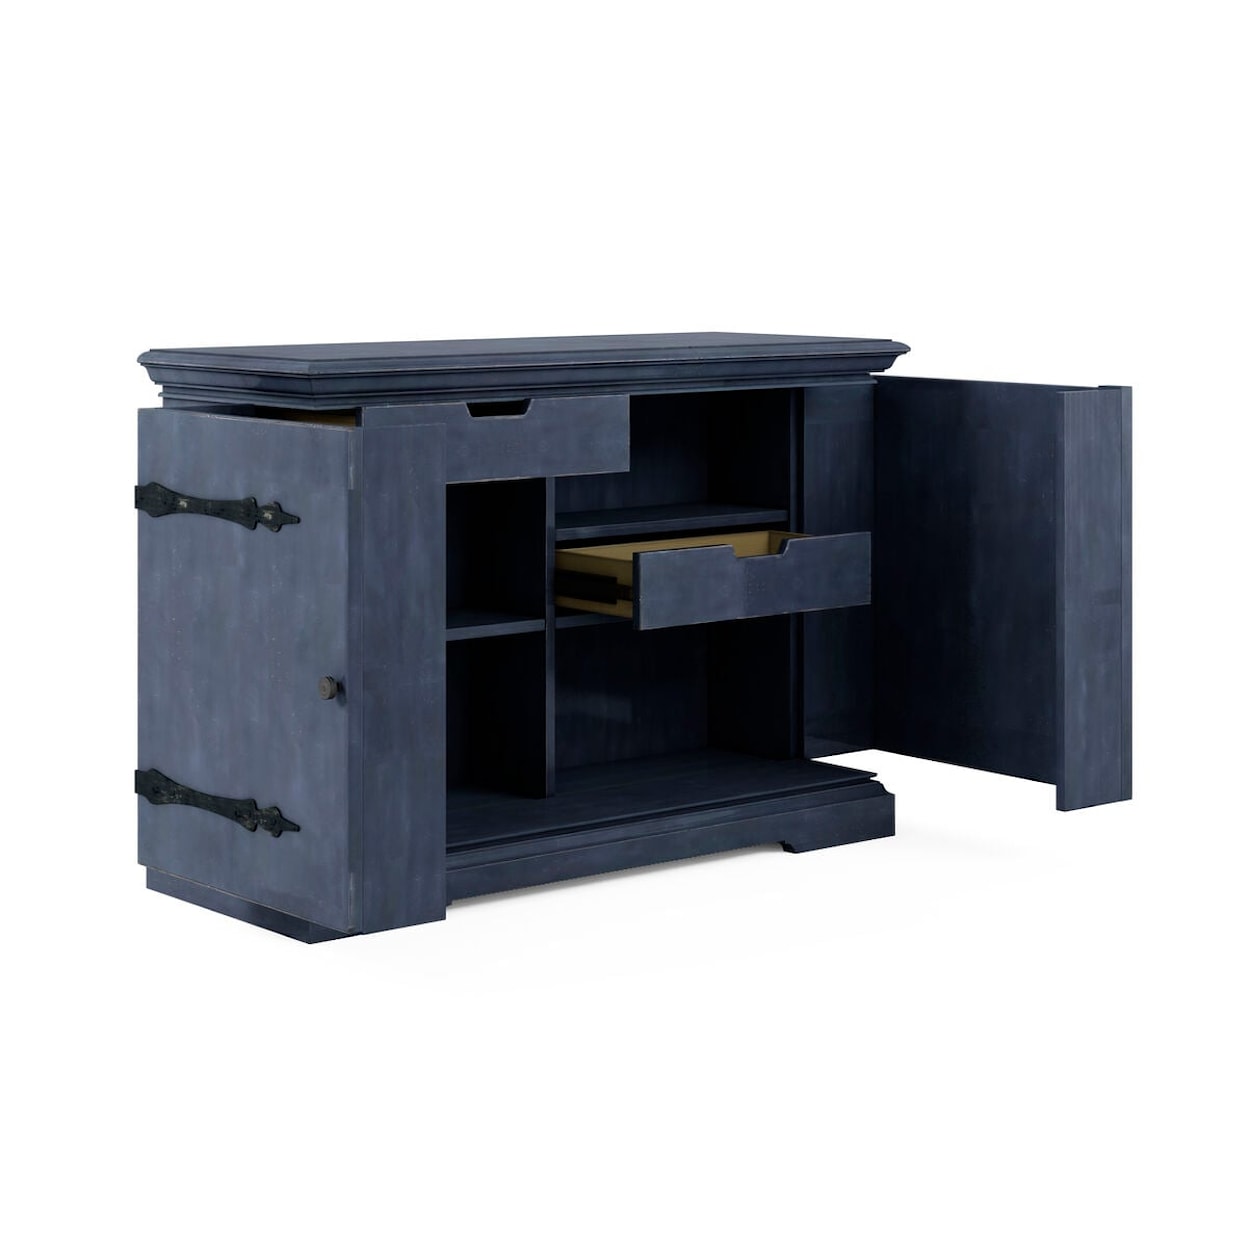 A.R.T. Furniture Inc Alcove Bar Cabinet